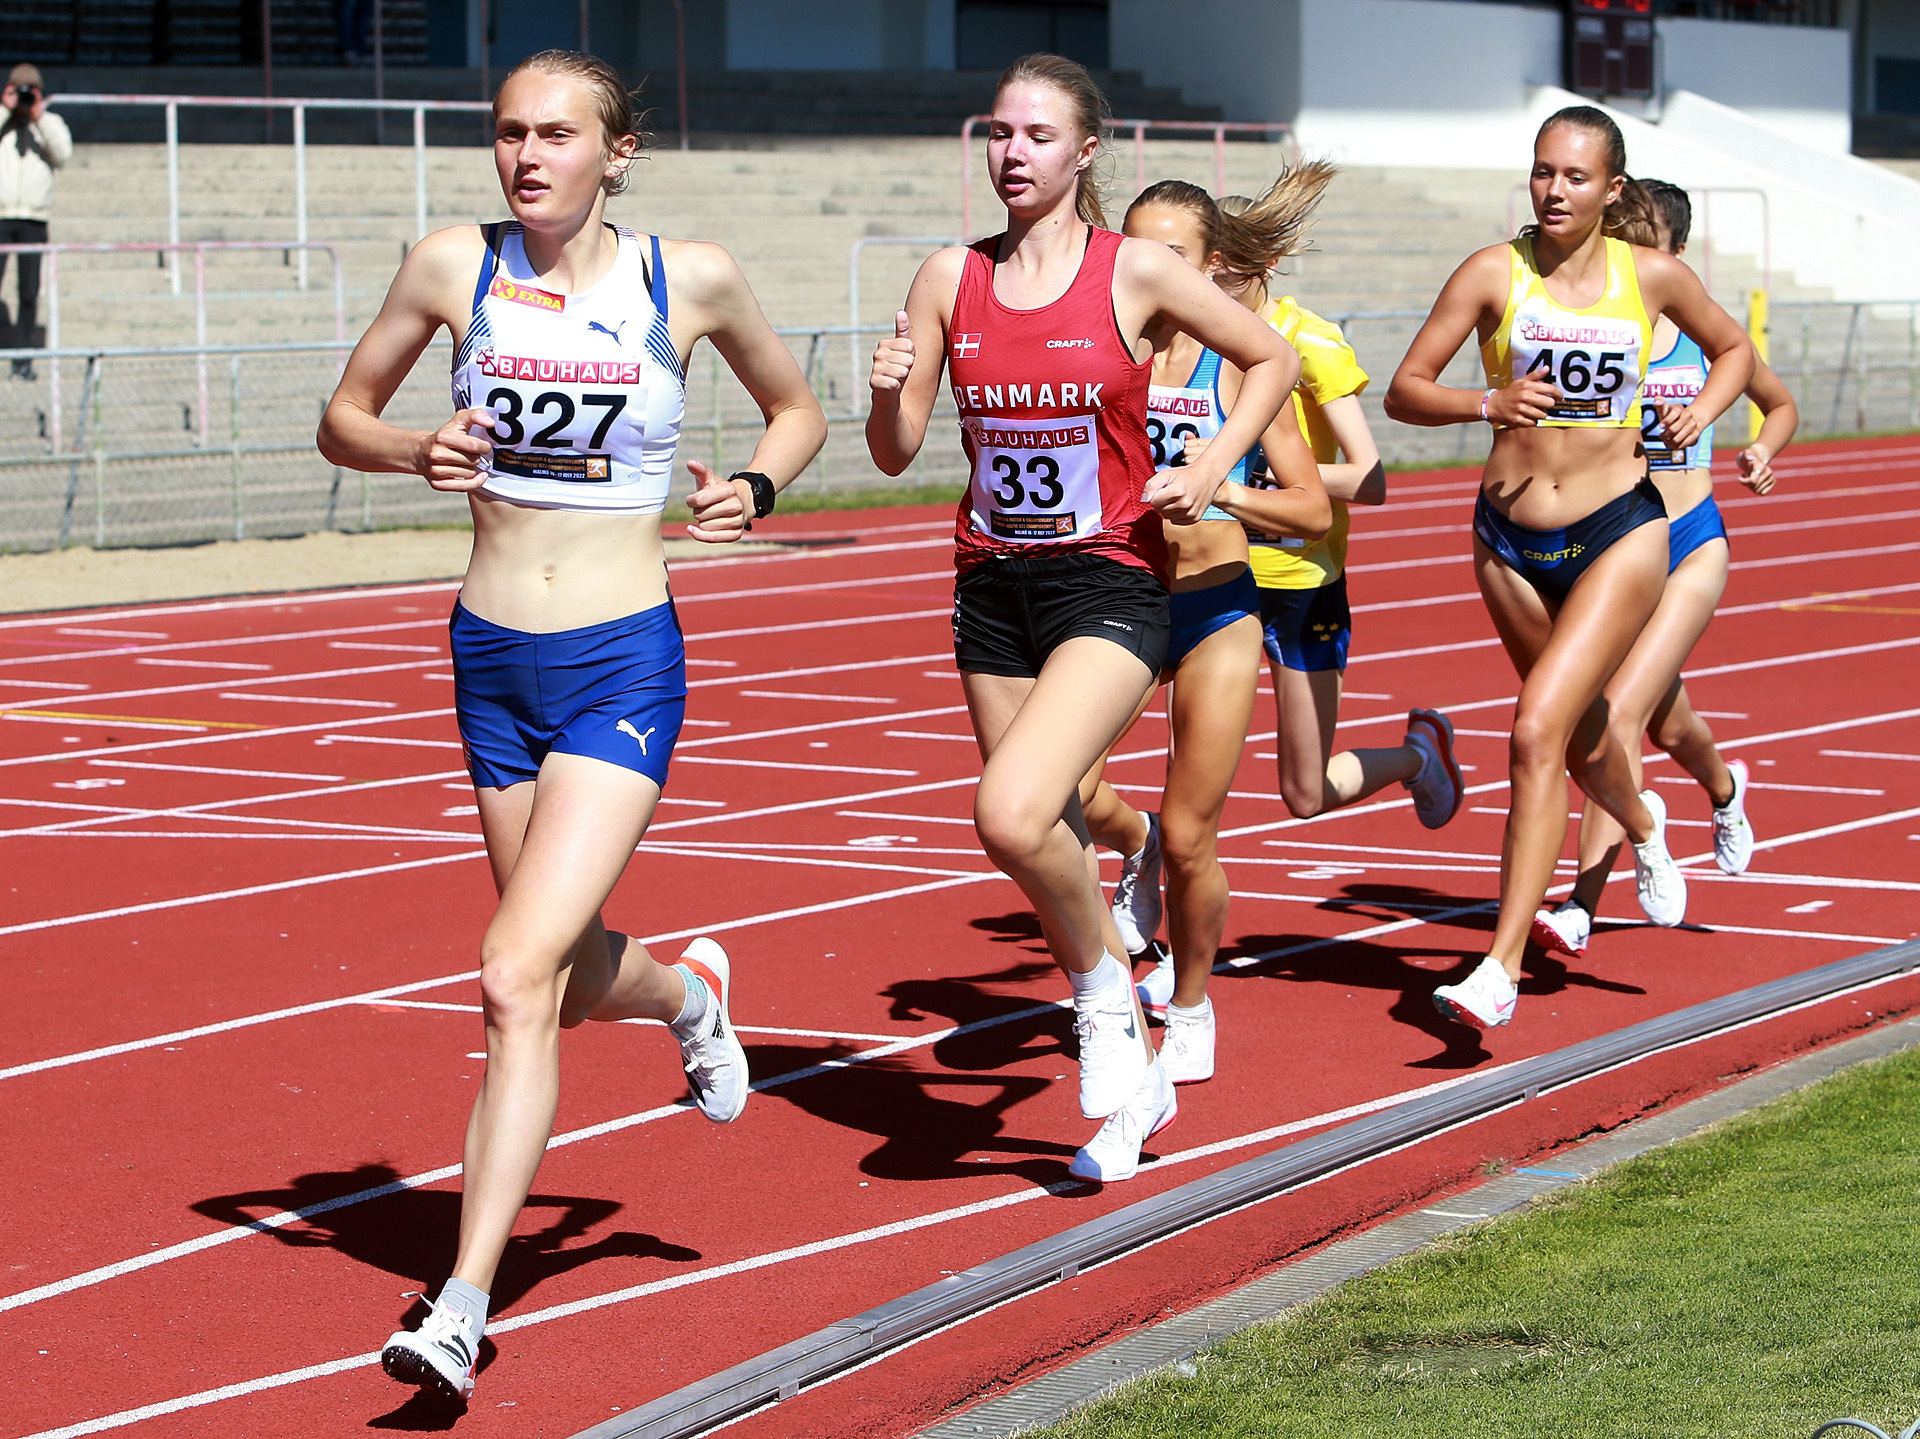 5000m_U23_kvinner_Kristine_Meinert_Roed_drar_feltet_AZ3T8964.jpg